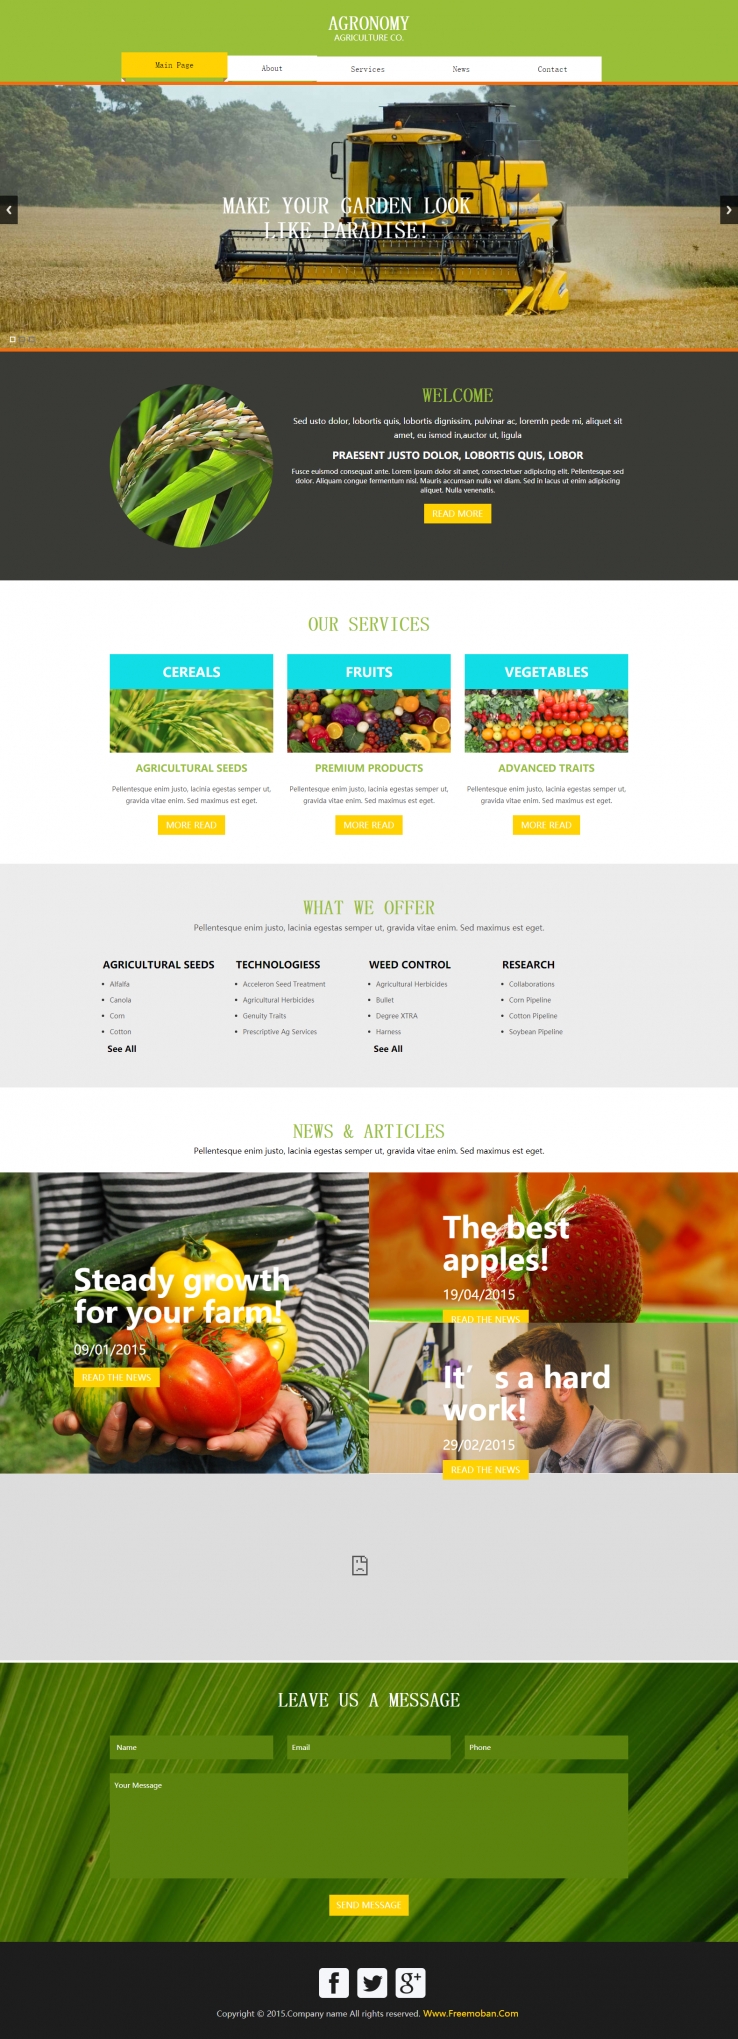 绿色简洁风格的蔬菜农庄企业网站模板